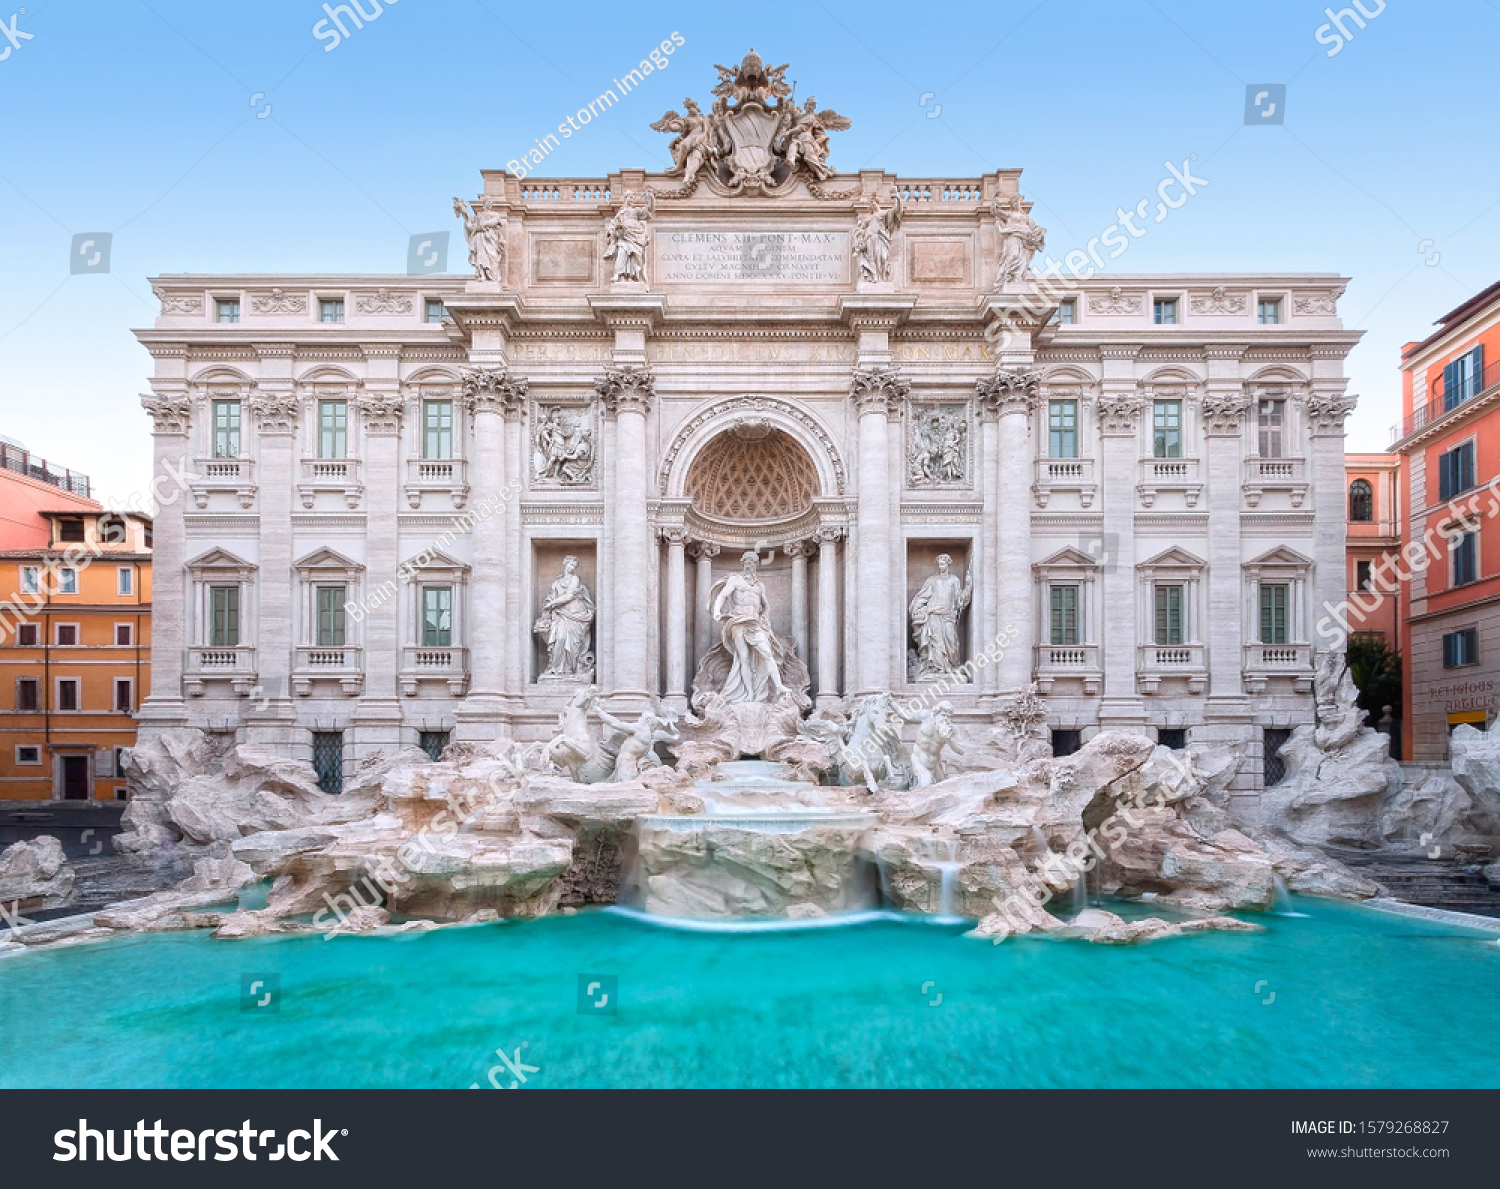 朝のトレビの噴水 イタリア ローマ ローマバロック様式の建築と目印 ローマトレビの泉は ローマとイタリアの主要なアトラクションの一つです写真素材 Shutterstock